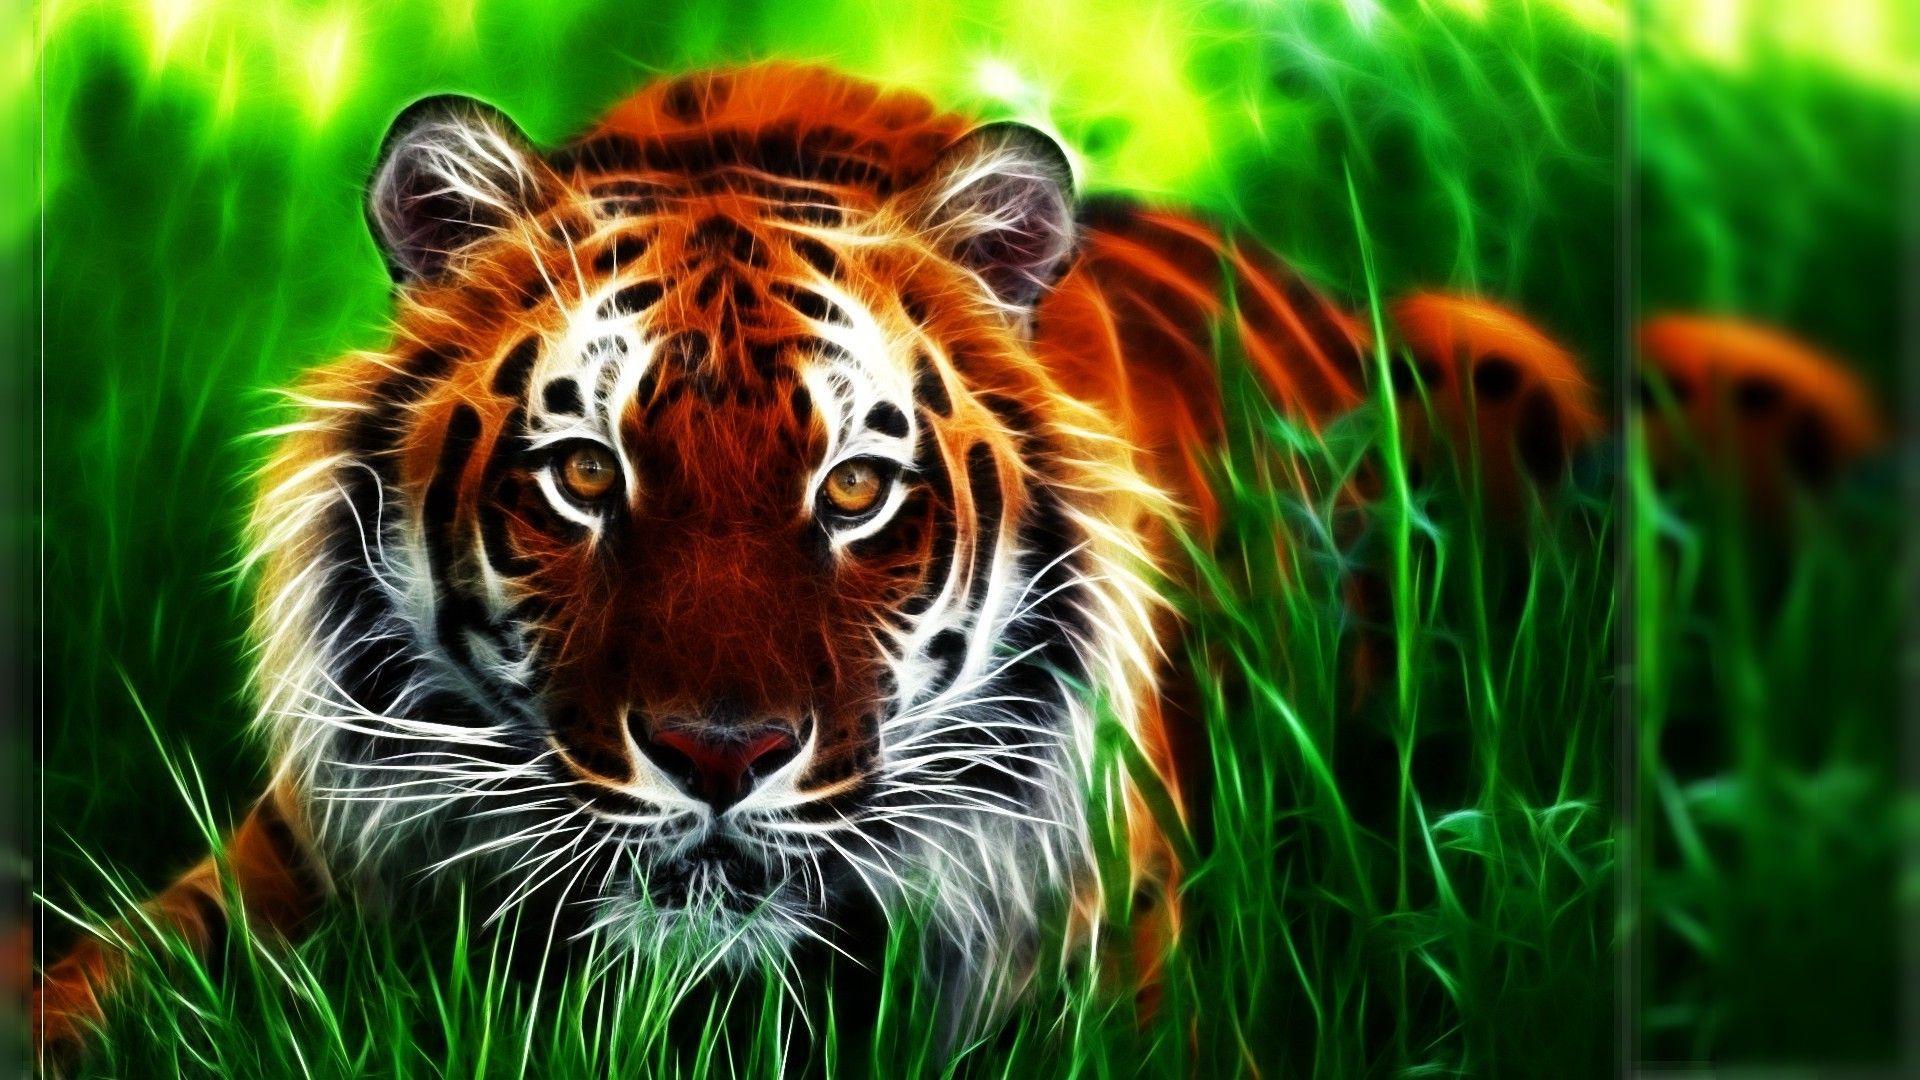 Tiger Picture 3D. Animals Wallpaper. Tiger wallpaper